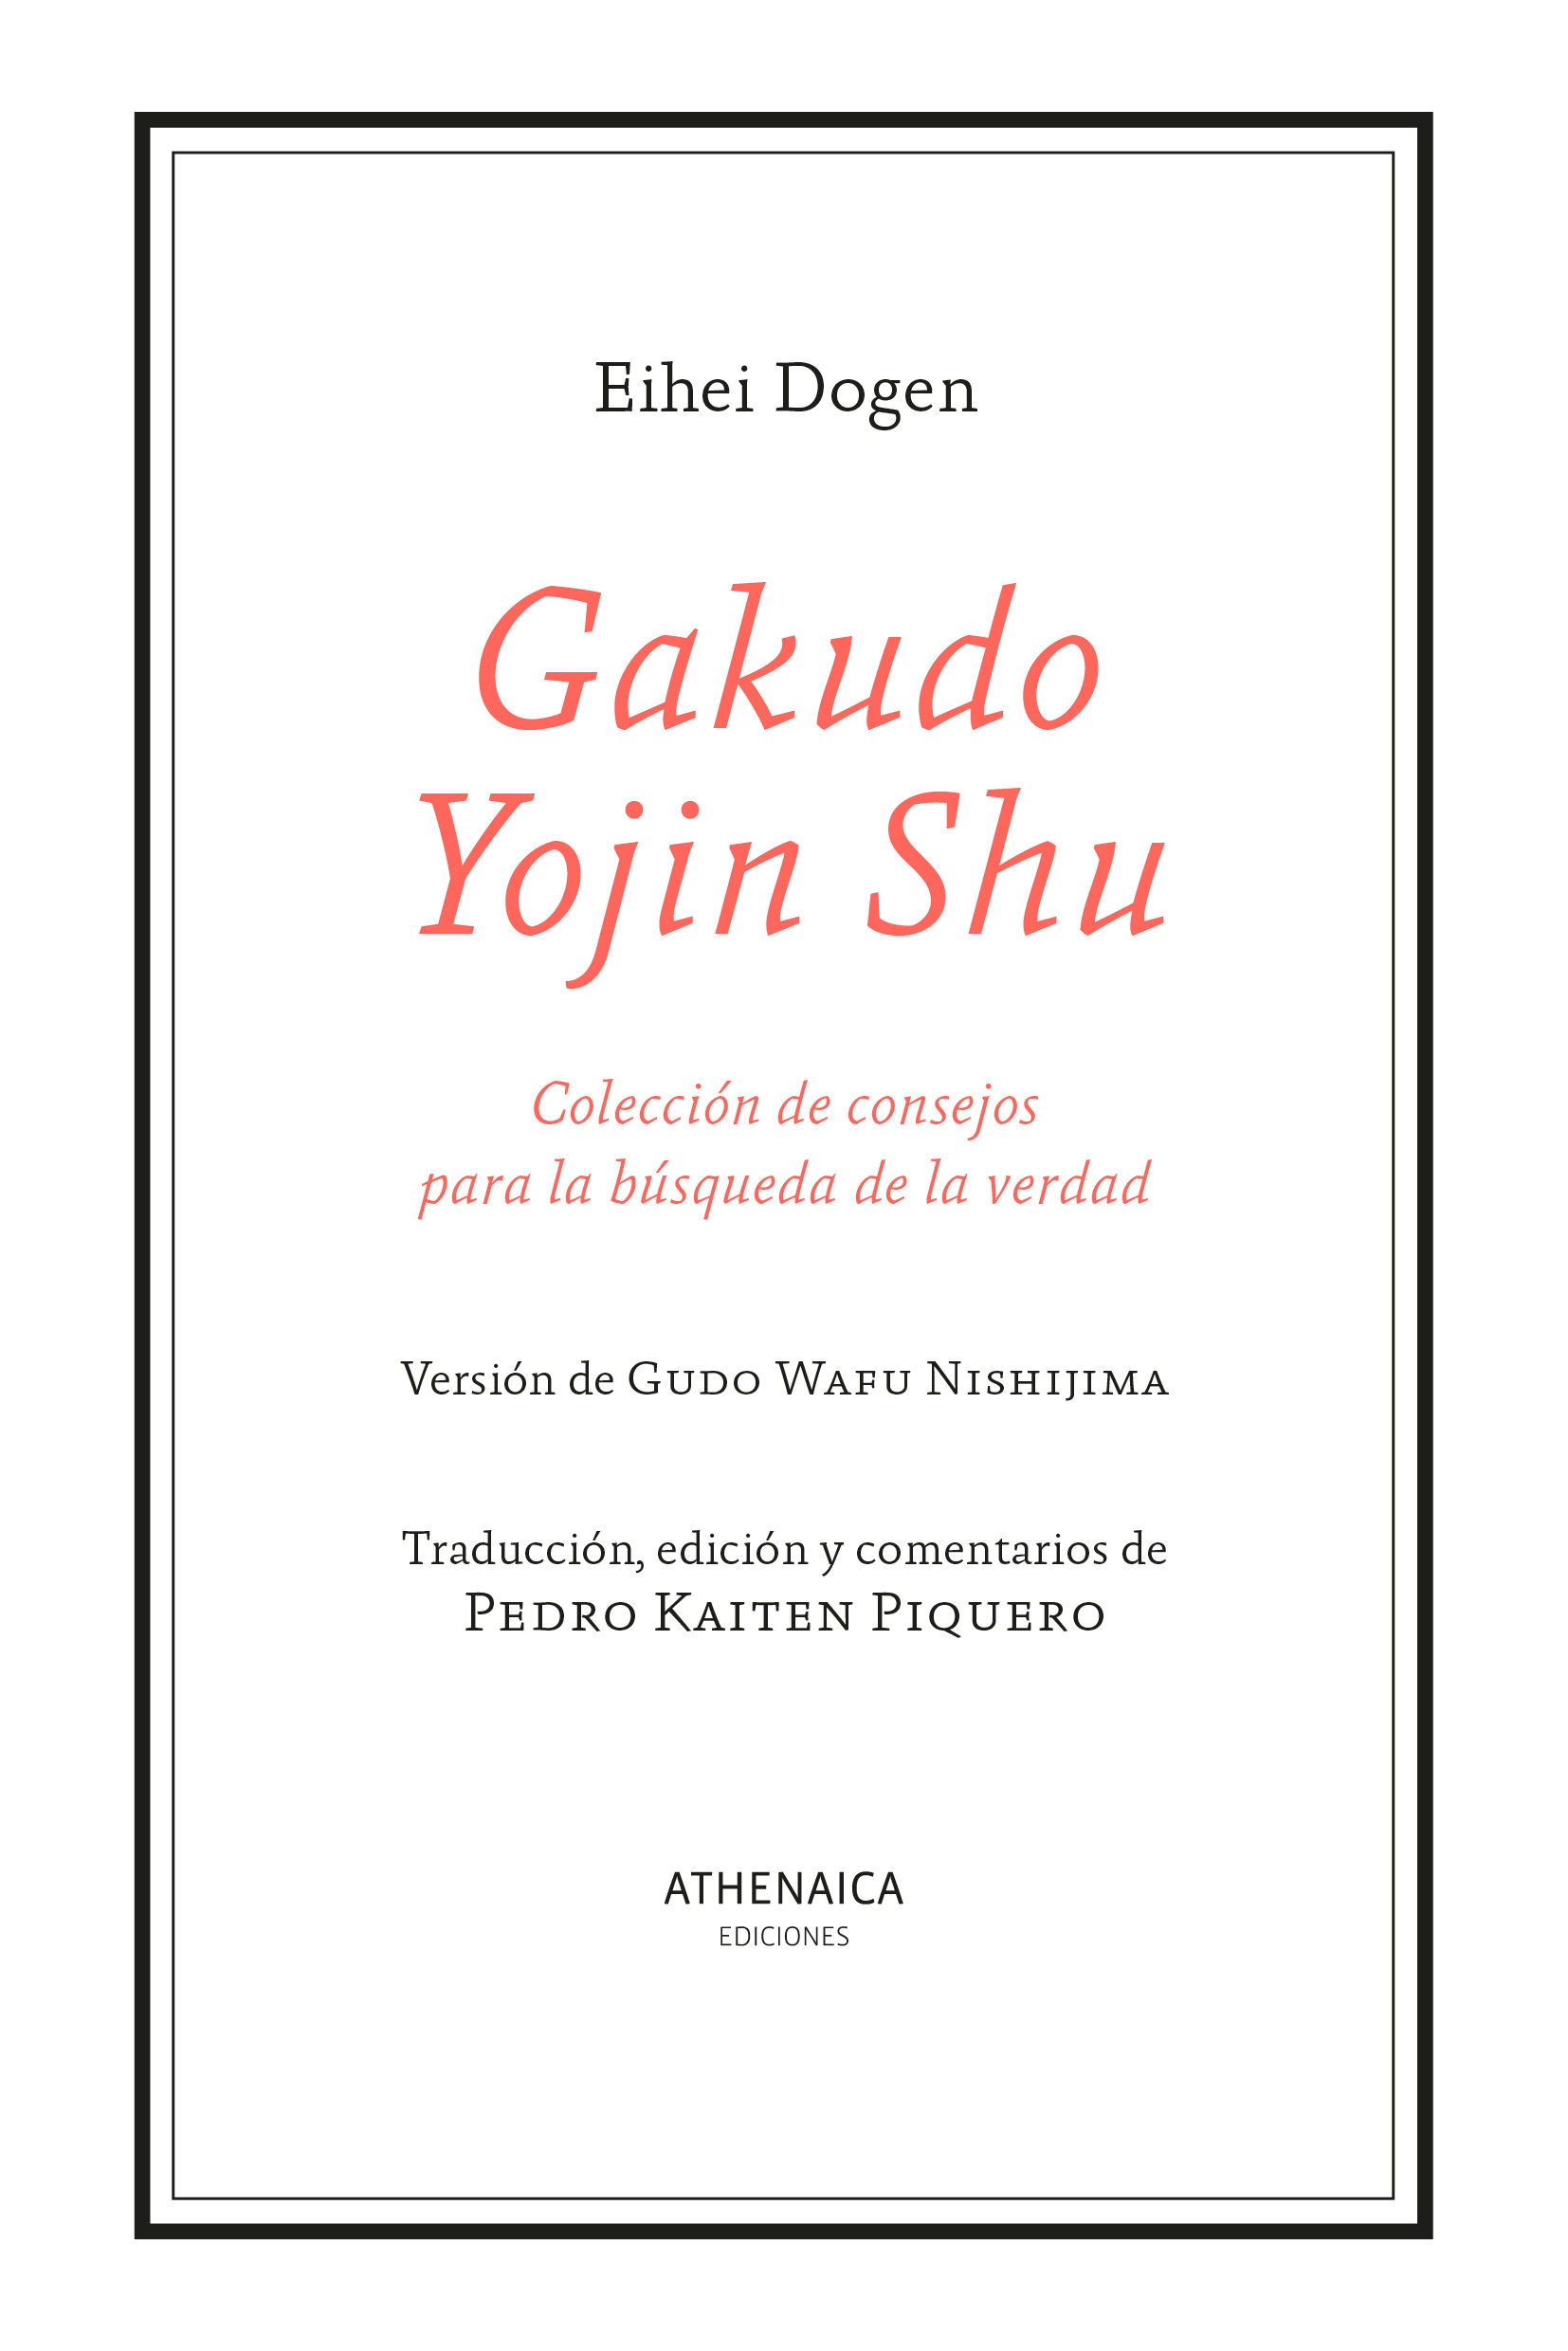 GAKUDO YOJIN SHU. COLECCIÓN DE CONSEJOS PARA LA BÚSQUEDA DE LA VERDAD